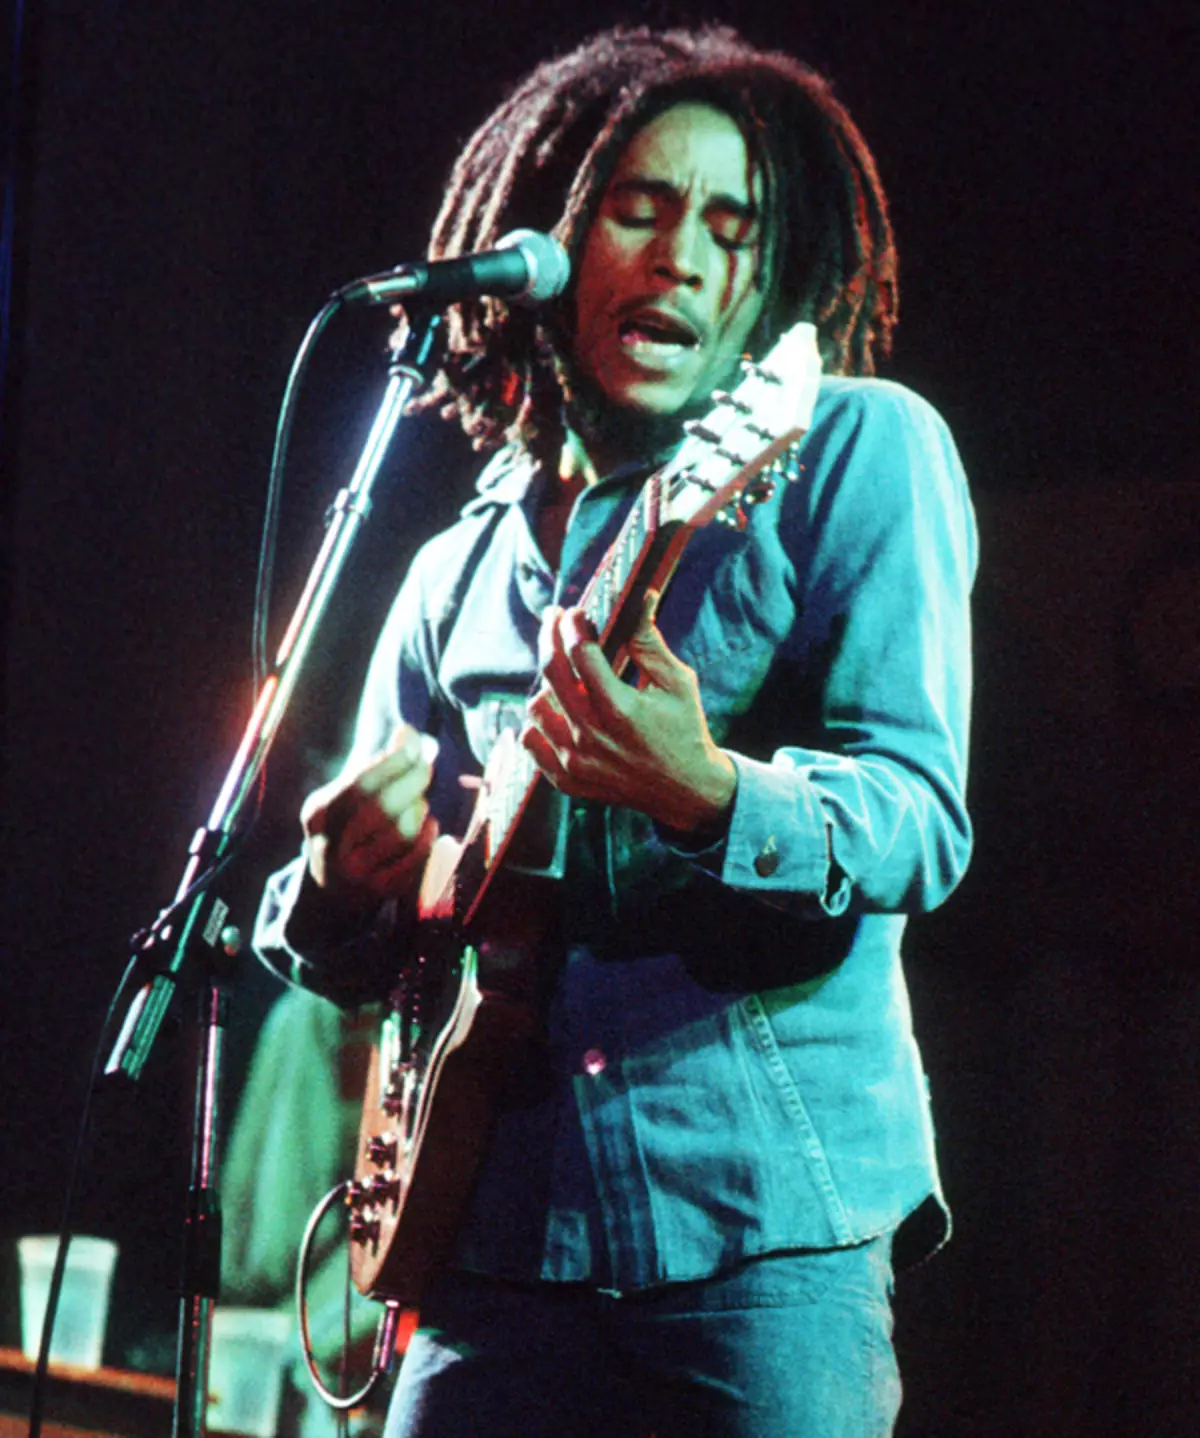 លោក Baba Marley មិនអាចមានឈ្មោះថាសង្ហាទេប៉ុន្តែស្ត្រីឆ្កួតនឹងគាត់